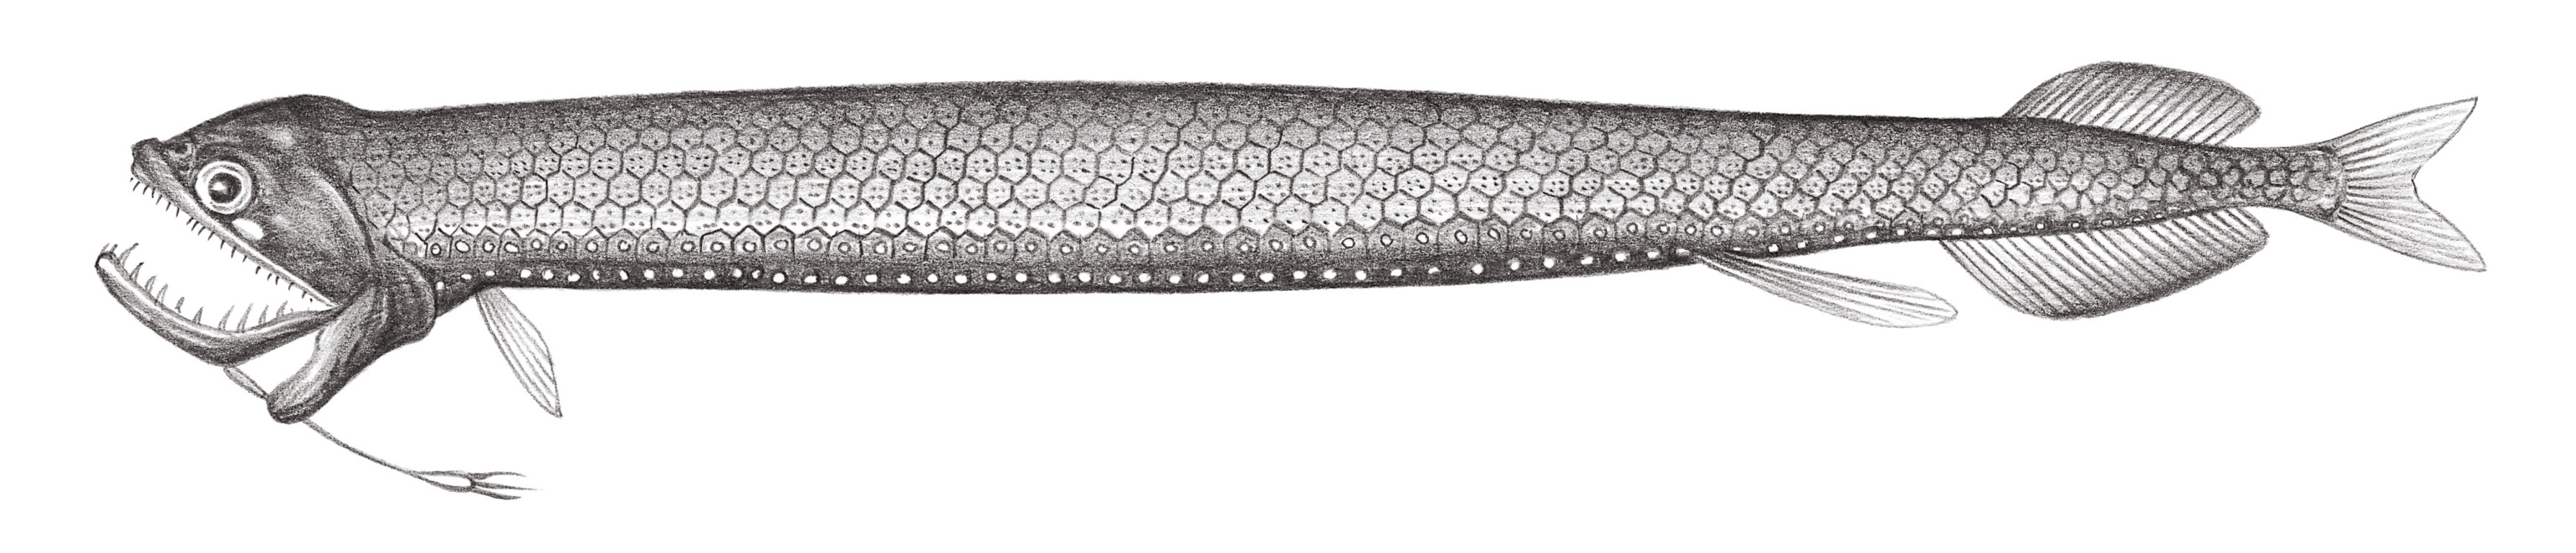 455.	雲斑巨口魚 Stomias nebulosus Alcock, 1889